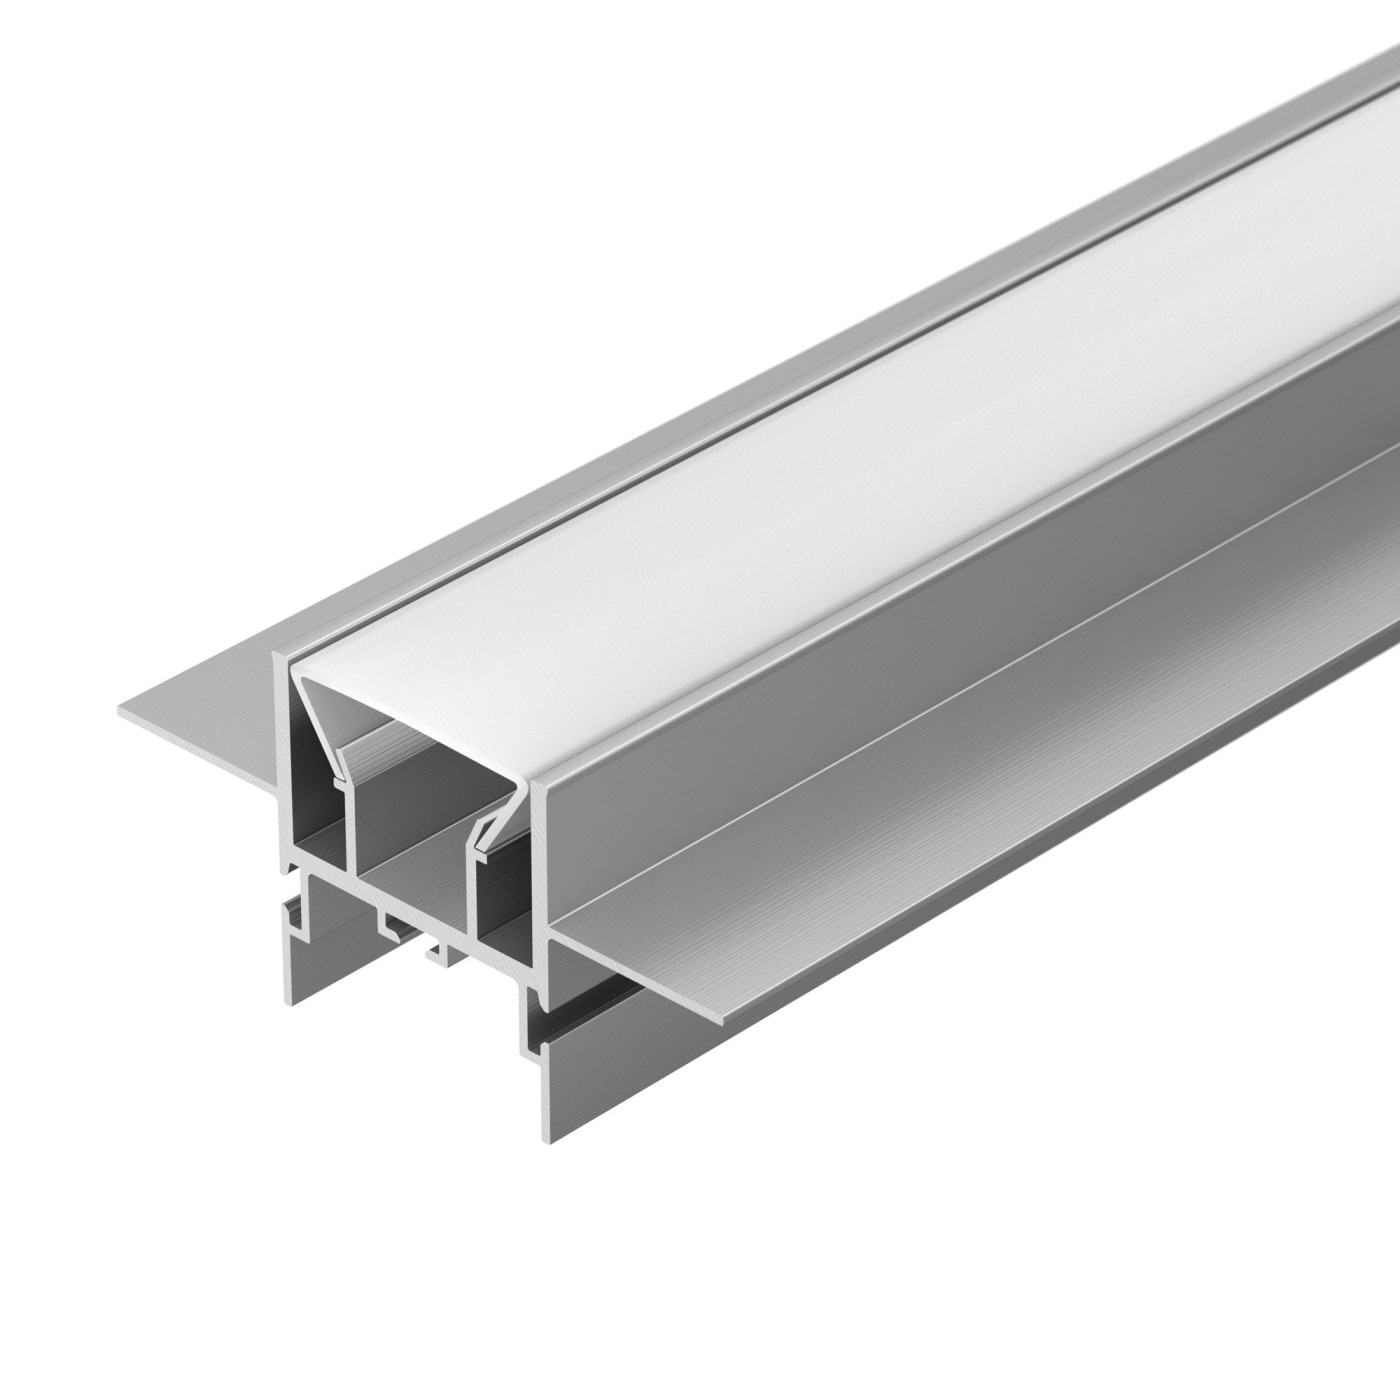 Профиль FOLED-CEIL-CENTER-2000 (Arlight, Алюминий) алюминиевый профиль ниши скрытого монтажа для гкл потолка alm 11681 pl w 2m